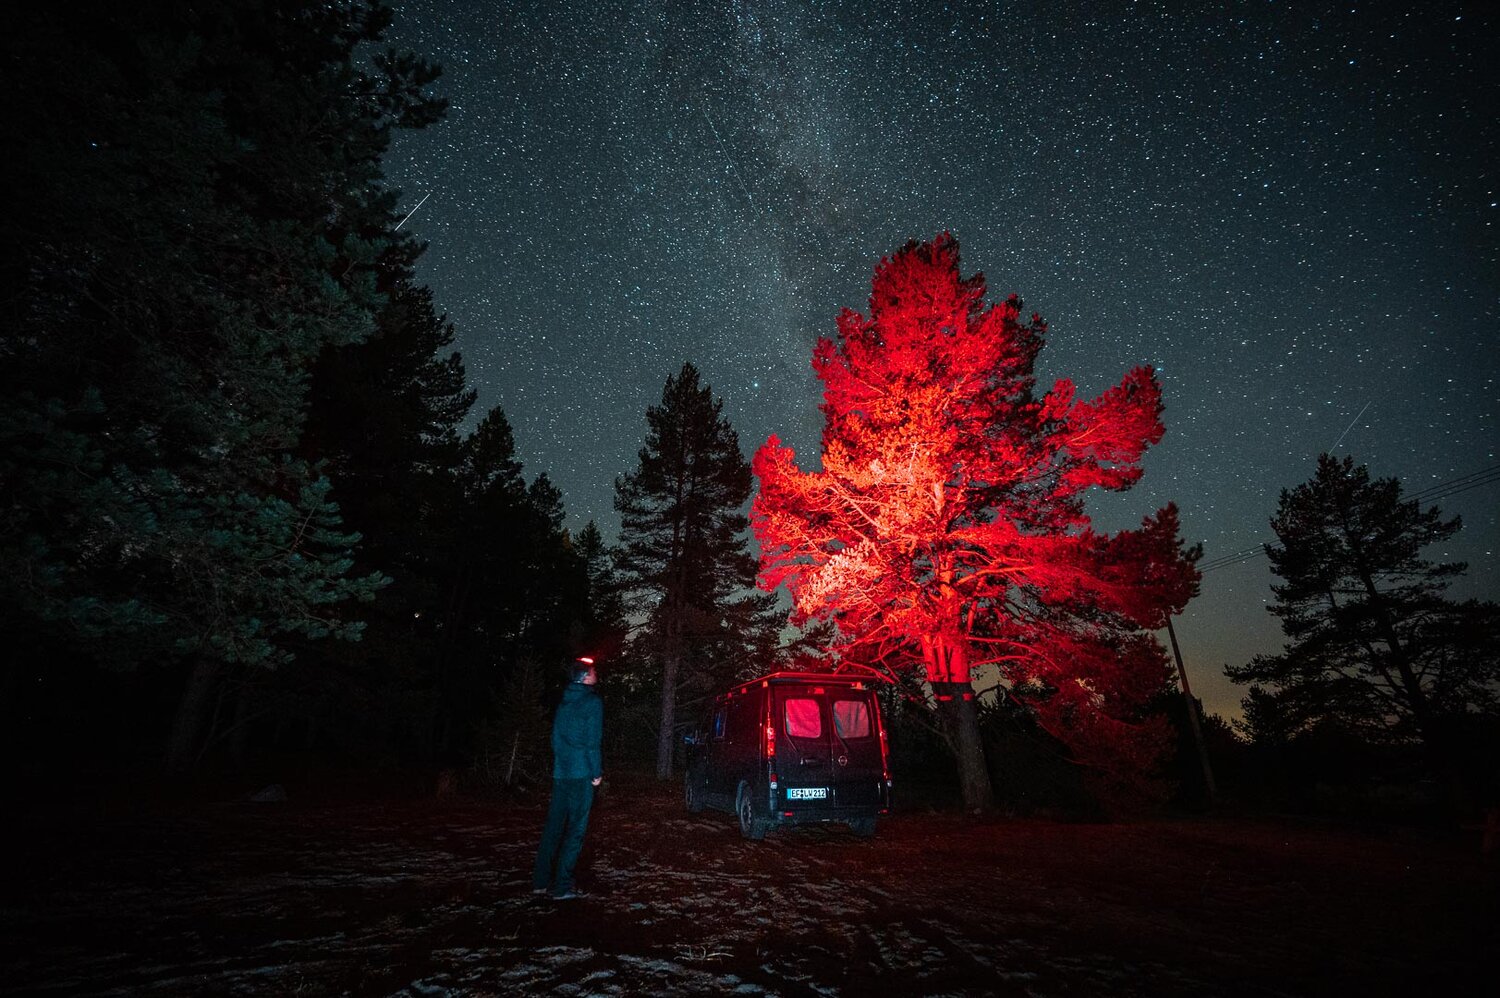 Stirnlampe Rotlicht - Astrofotografie — Landschaftsfotograf Lucas Winke